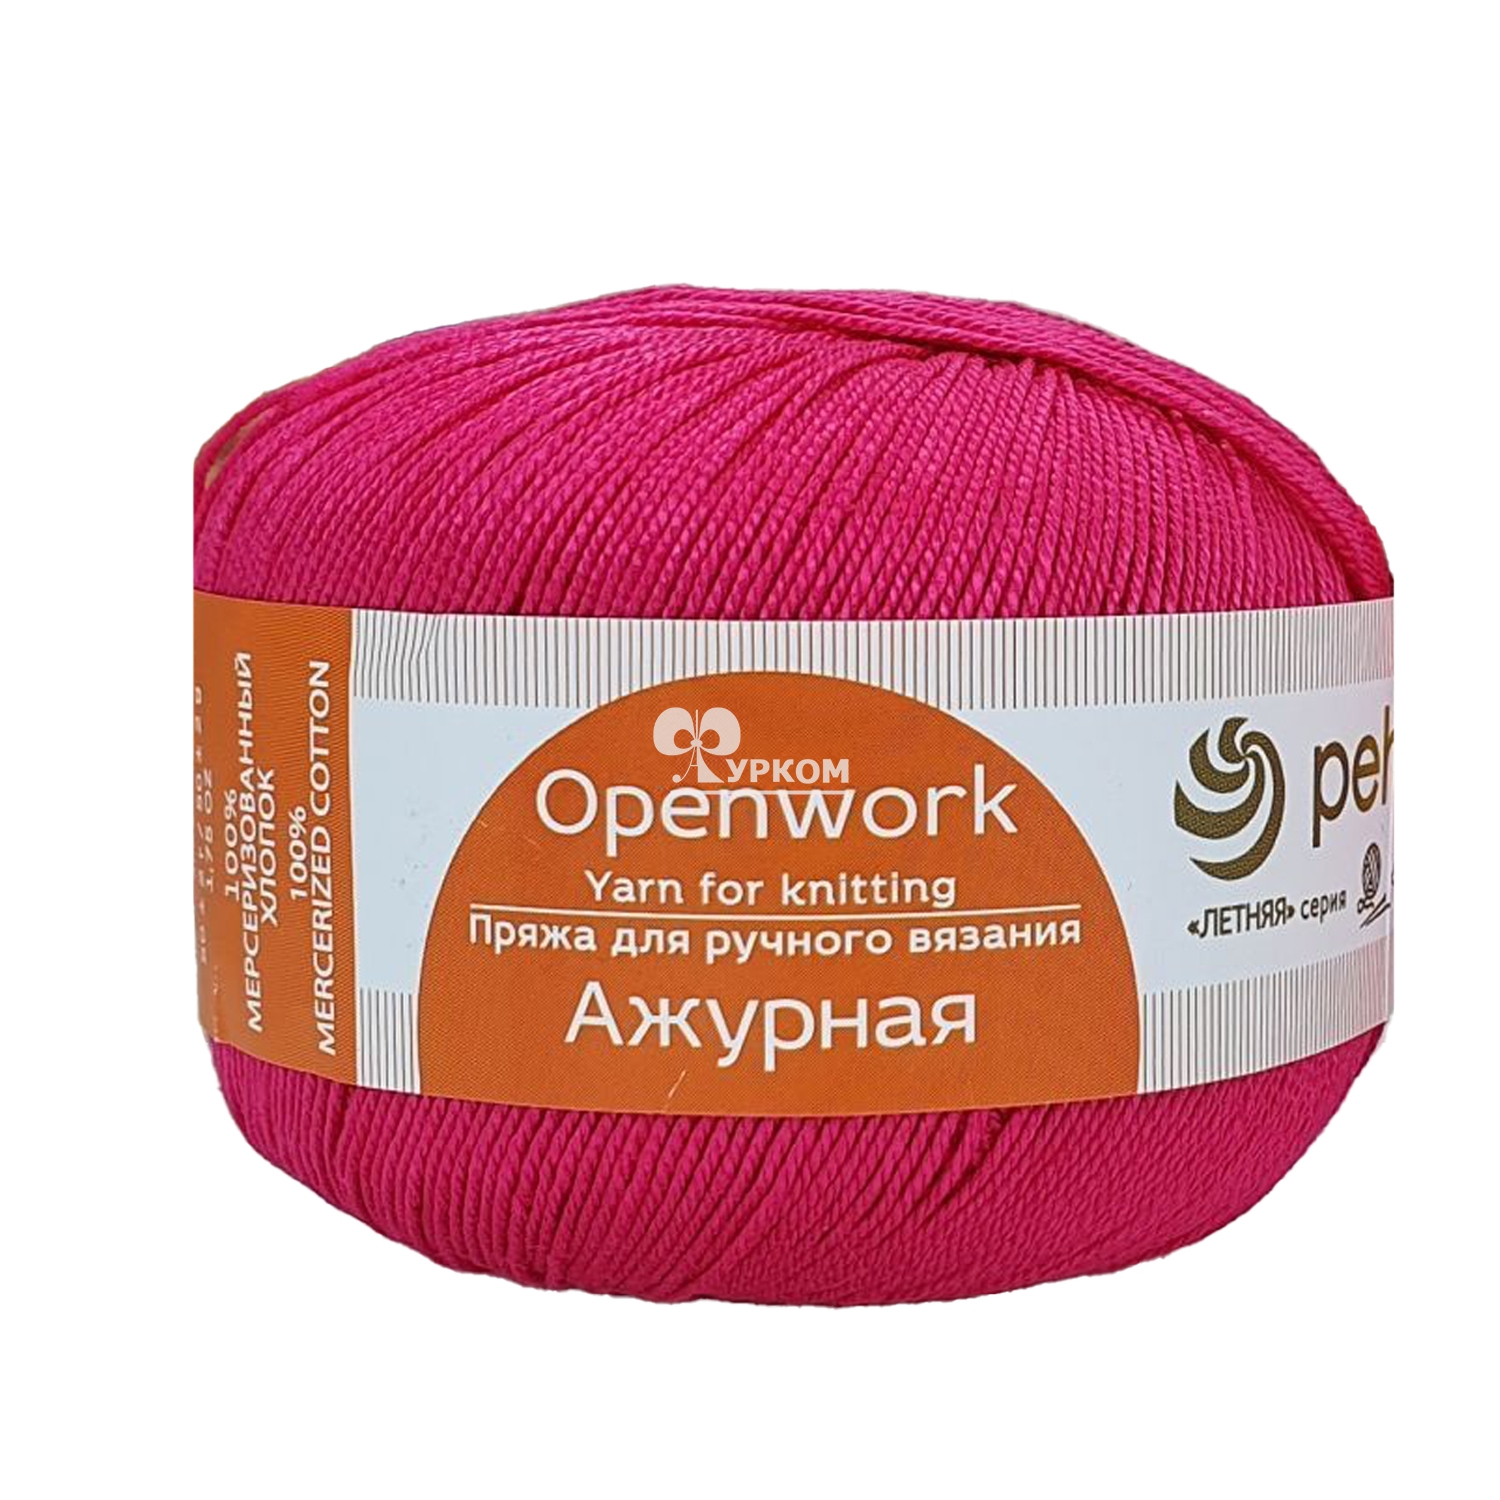 Шитье и вязание купить в Украине в интернет-магазине Toys